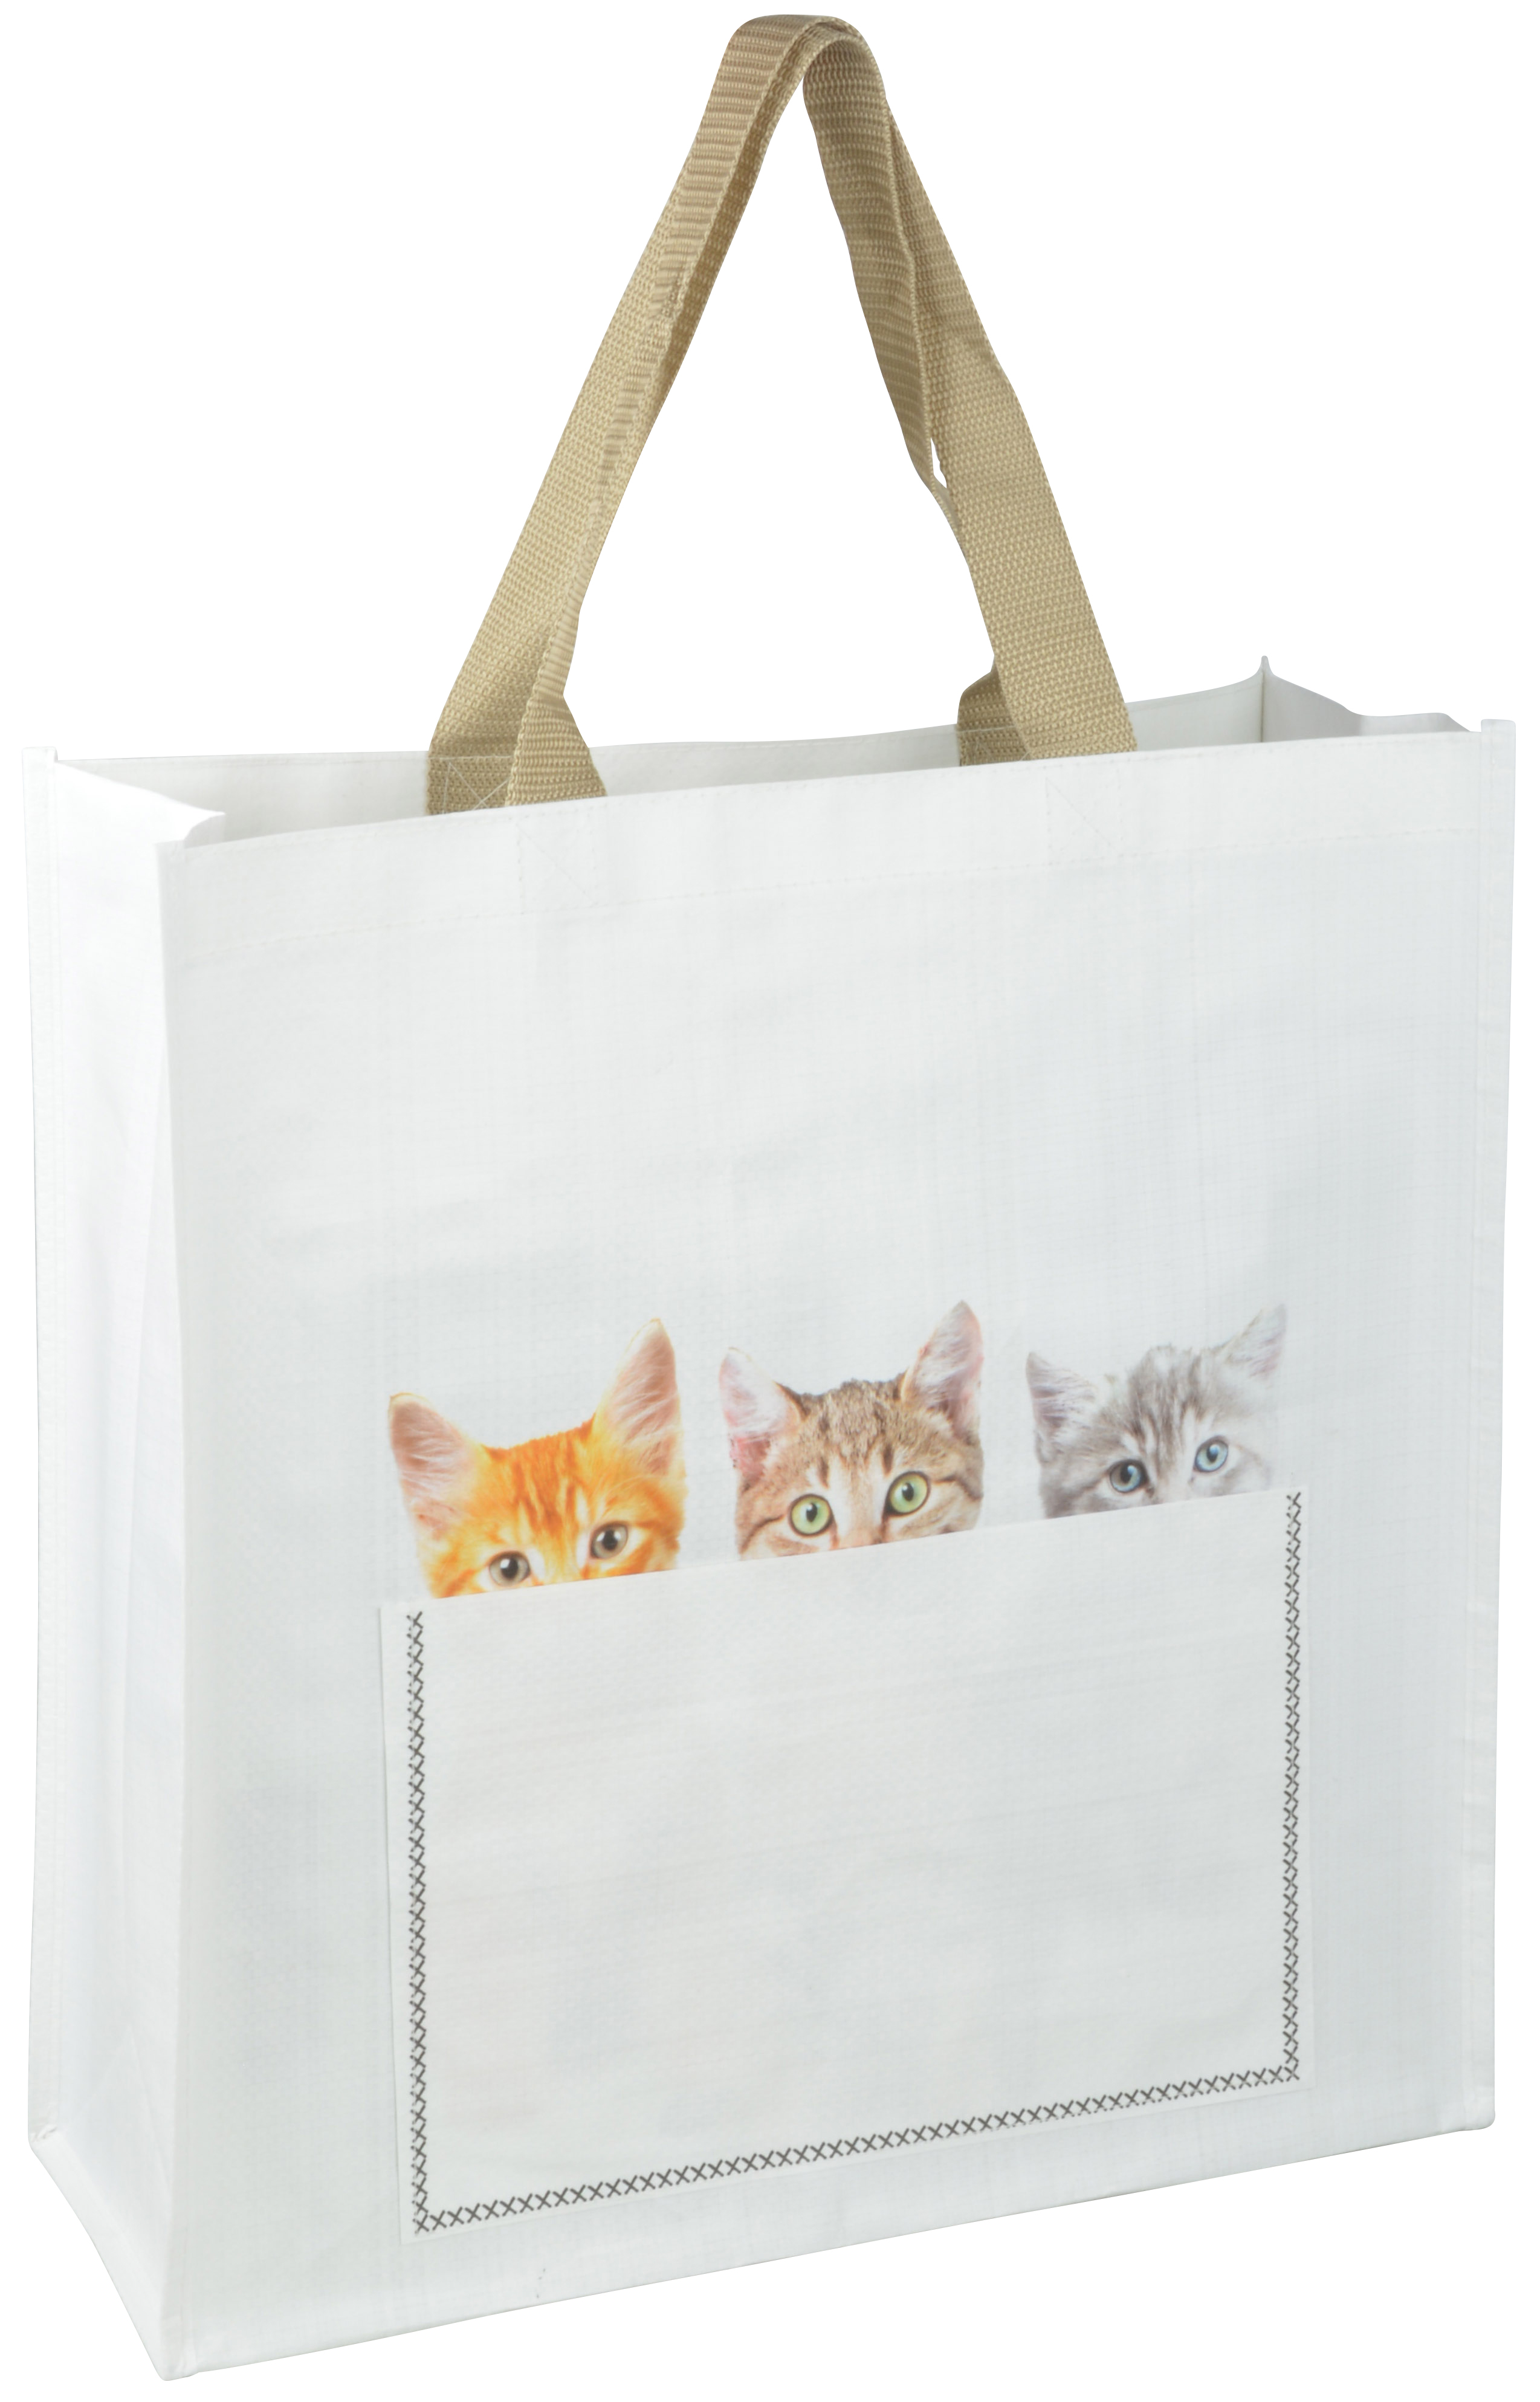 Kitten Peek-a-Boo Shopping Bag, 2 Asst. Styles - Esschert Design USA